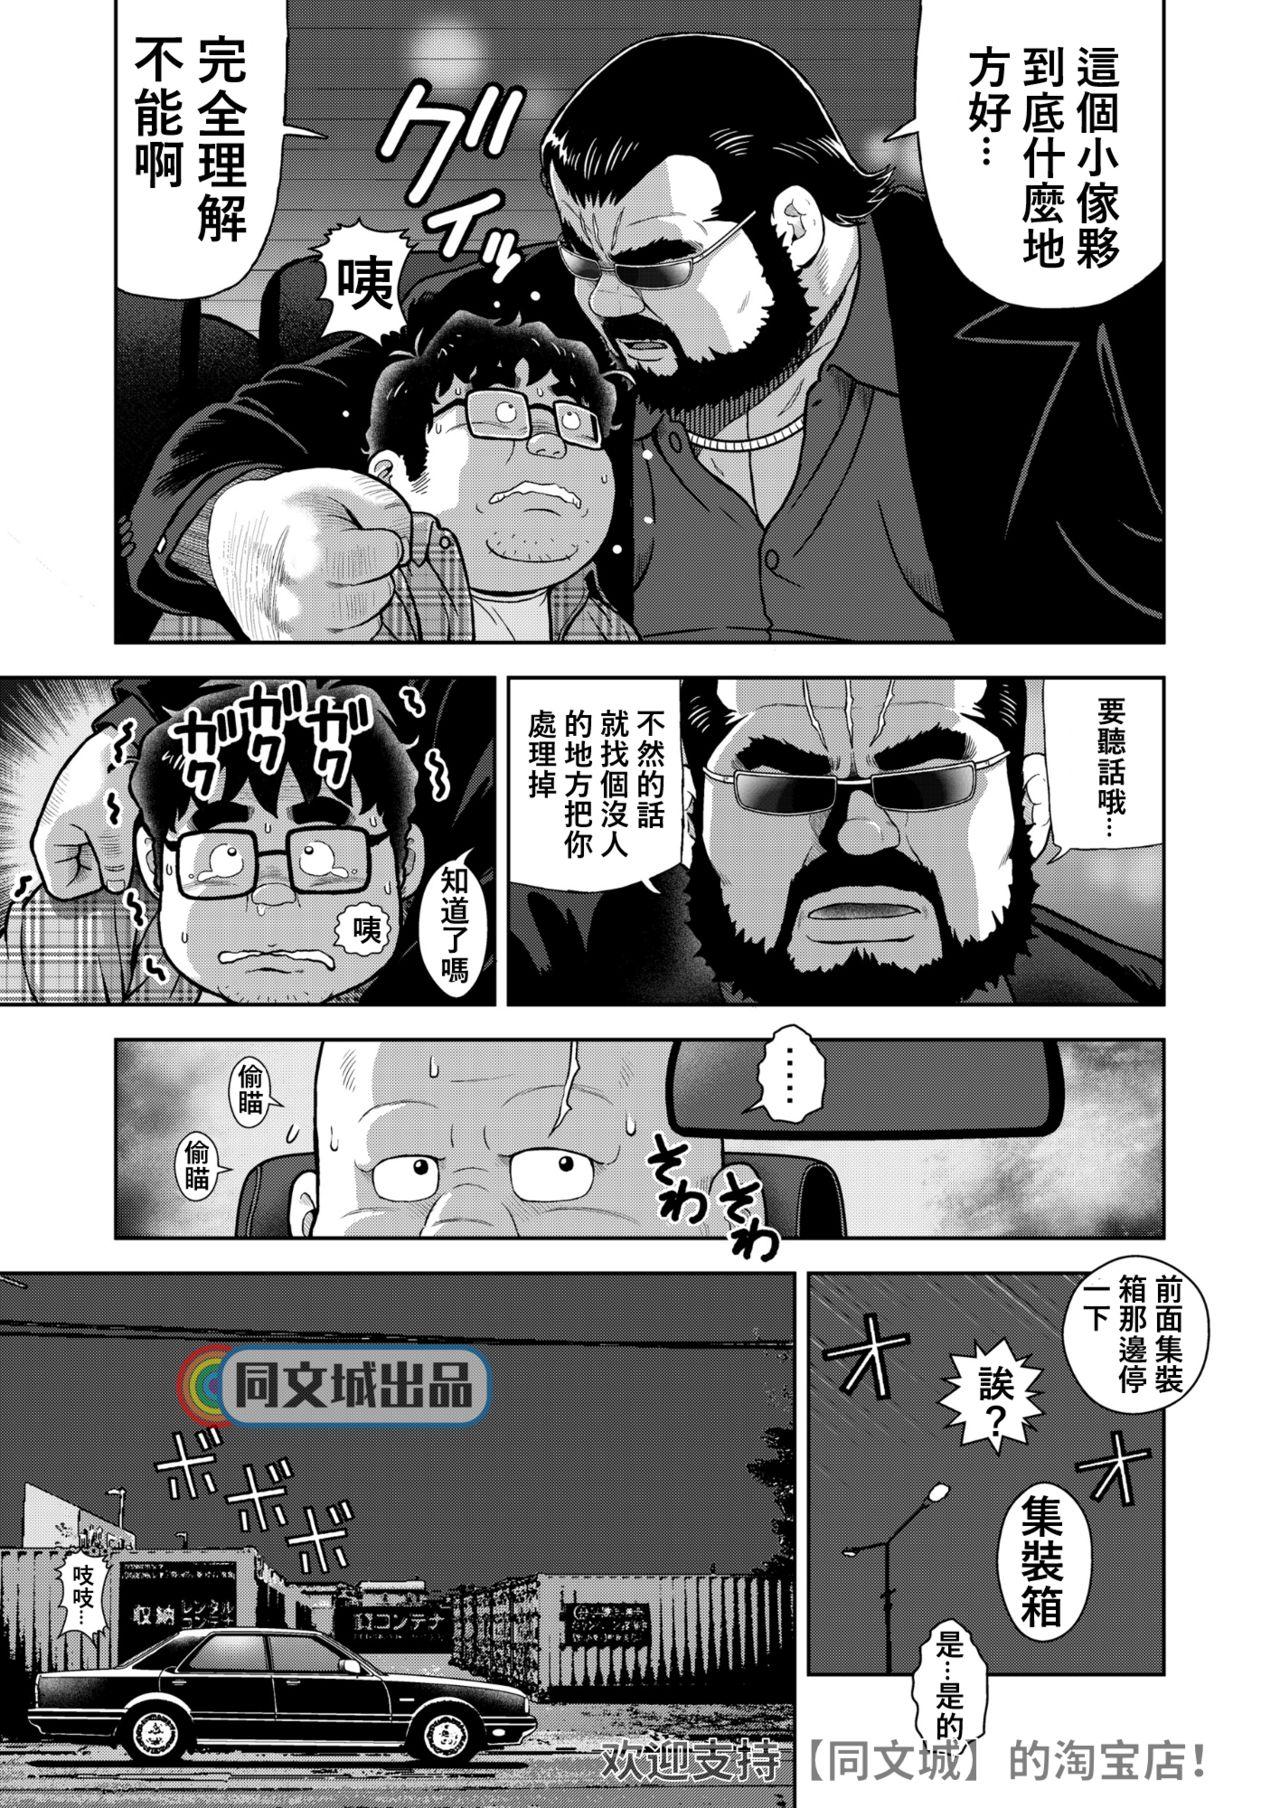 Que kunoyu jyuuhatihatsume otoko no kunsyou Sucks - Page 5